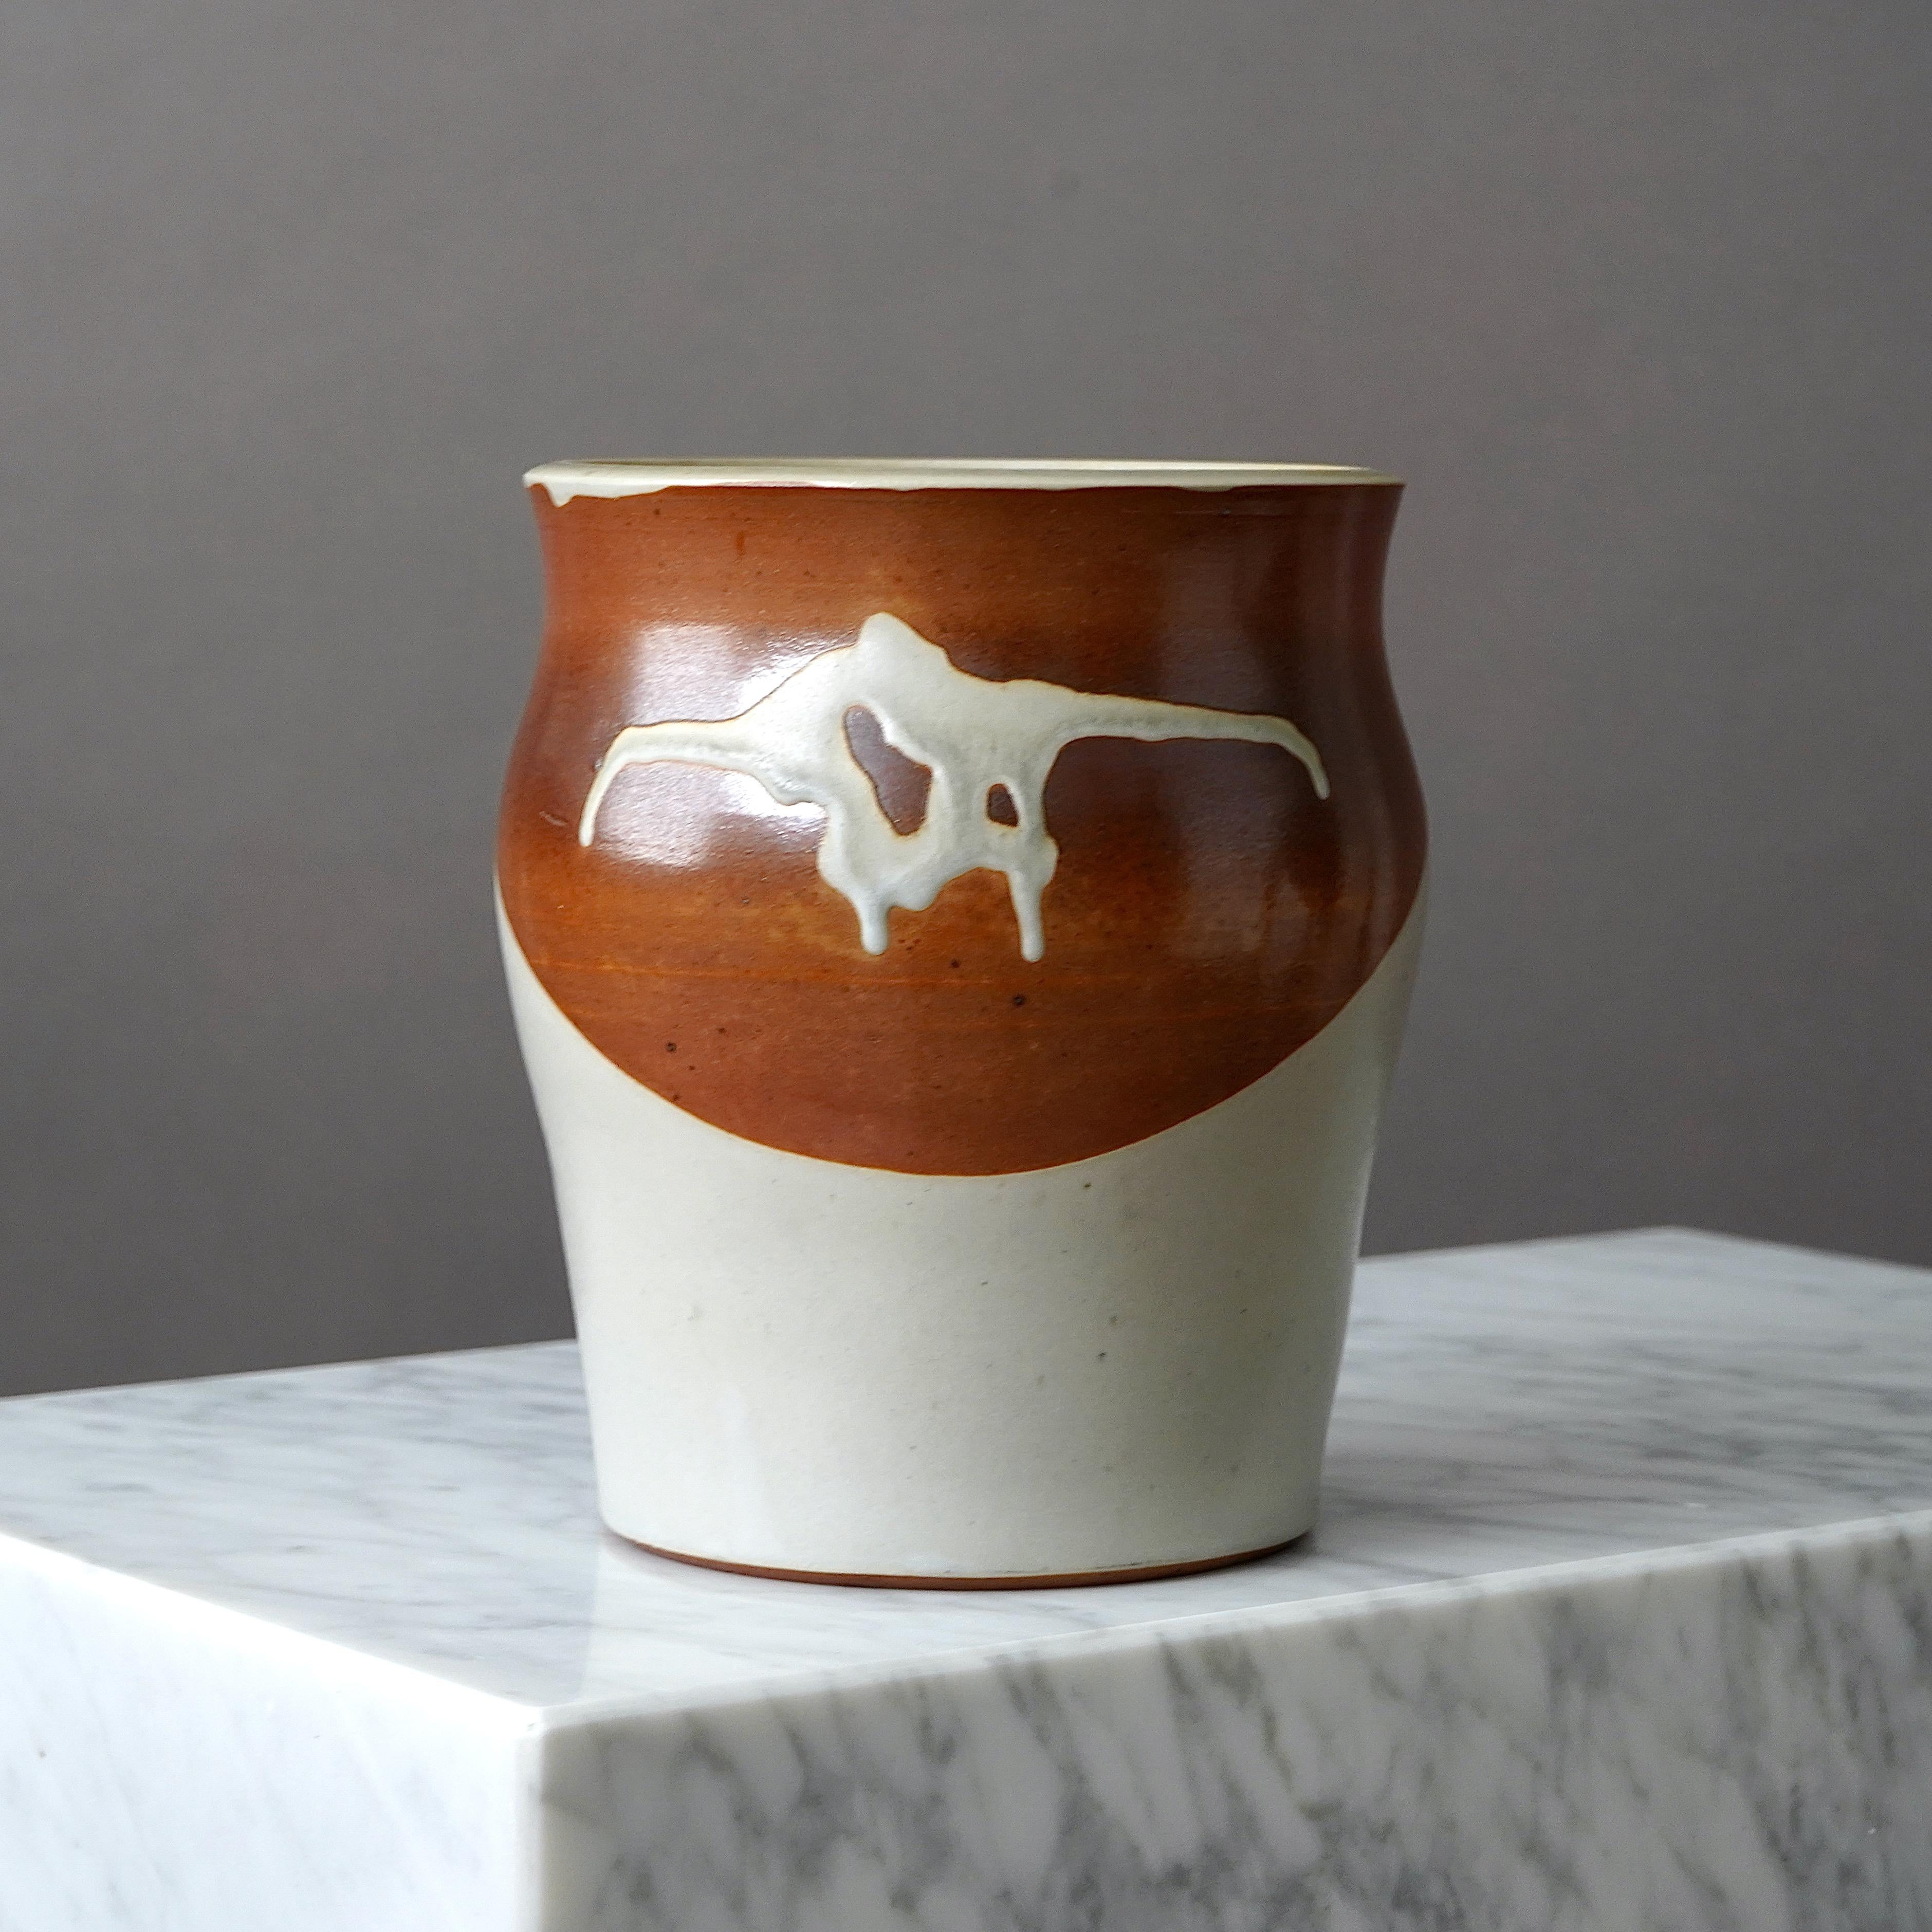 Un vase en grès magnifique et unique avec une glaçure étonnante. 
Réalisé par Rolf Palm, dans l'atelier de l'artiste, Mölle, Suède, 1985.

Excellent état. Incisé 